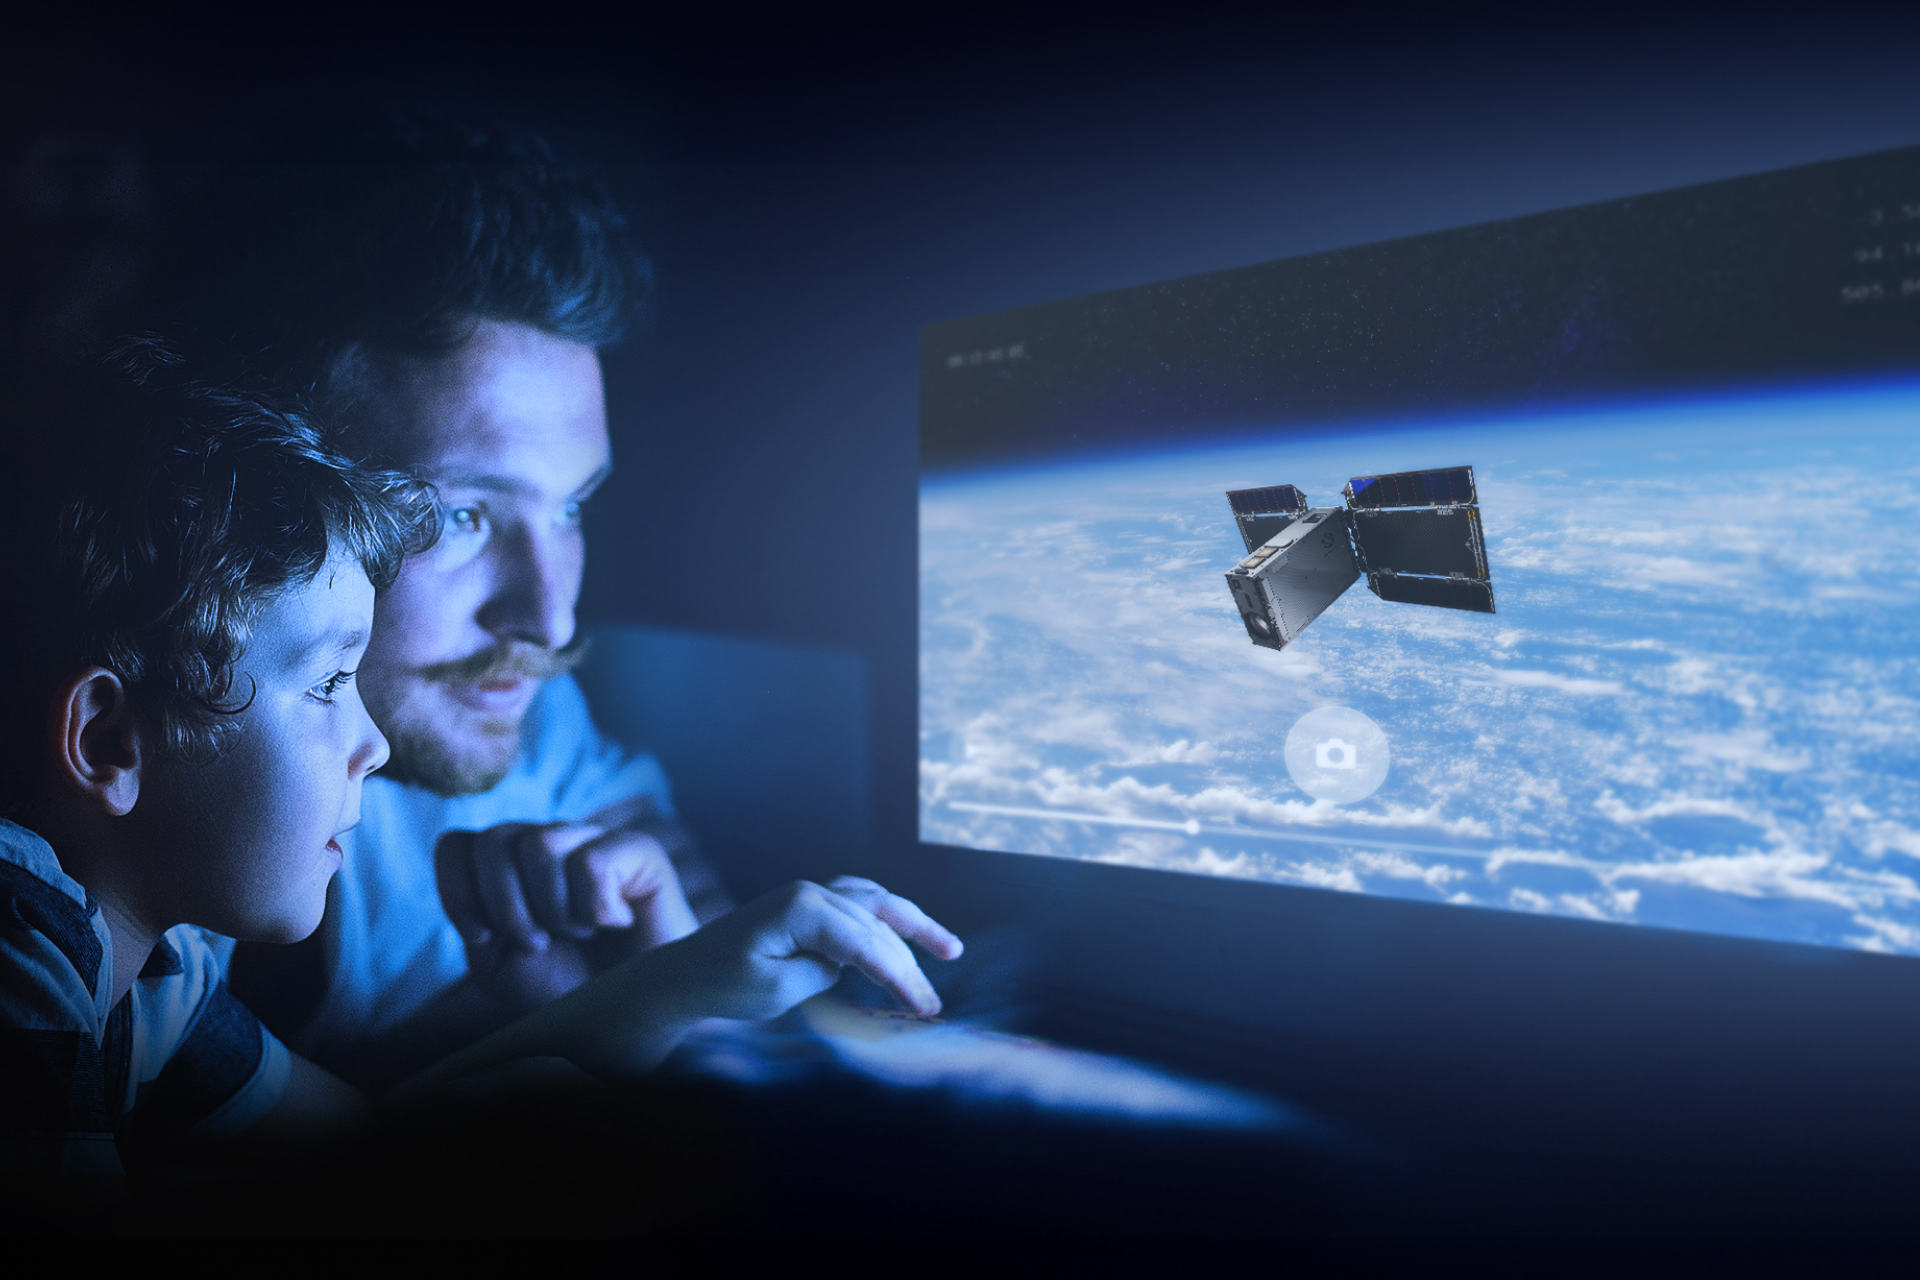 ソニー、人工衛星『EYE』から見える宇宙を体験できるウェブアプリを公開